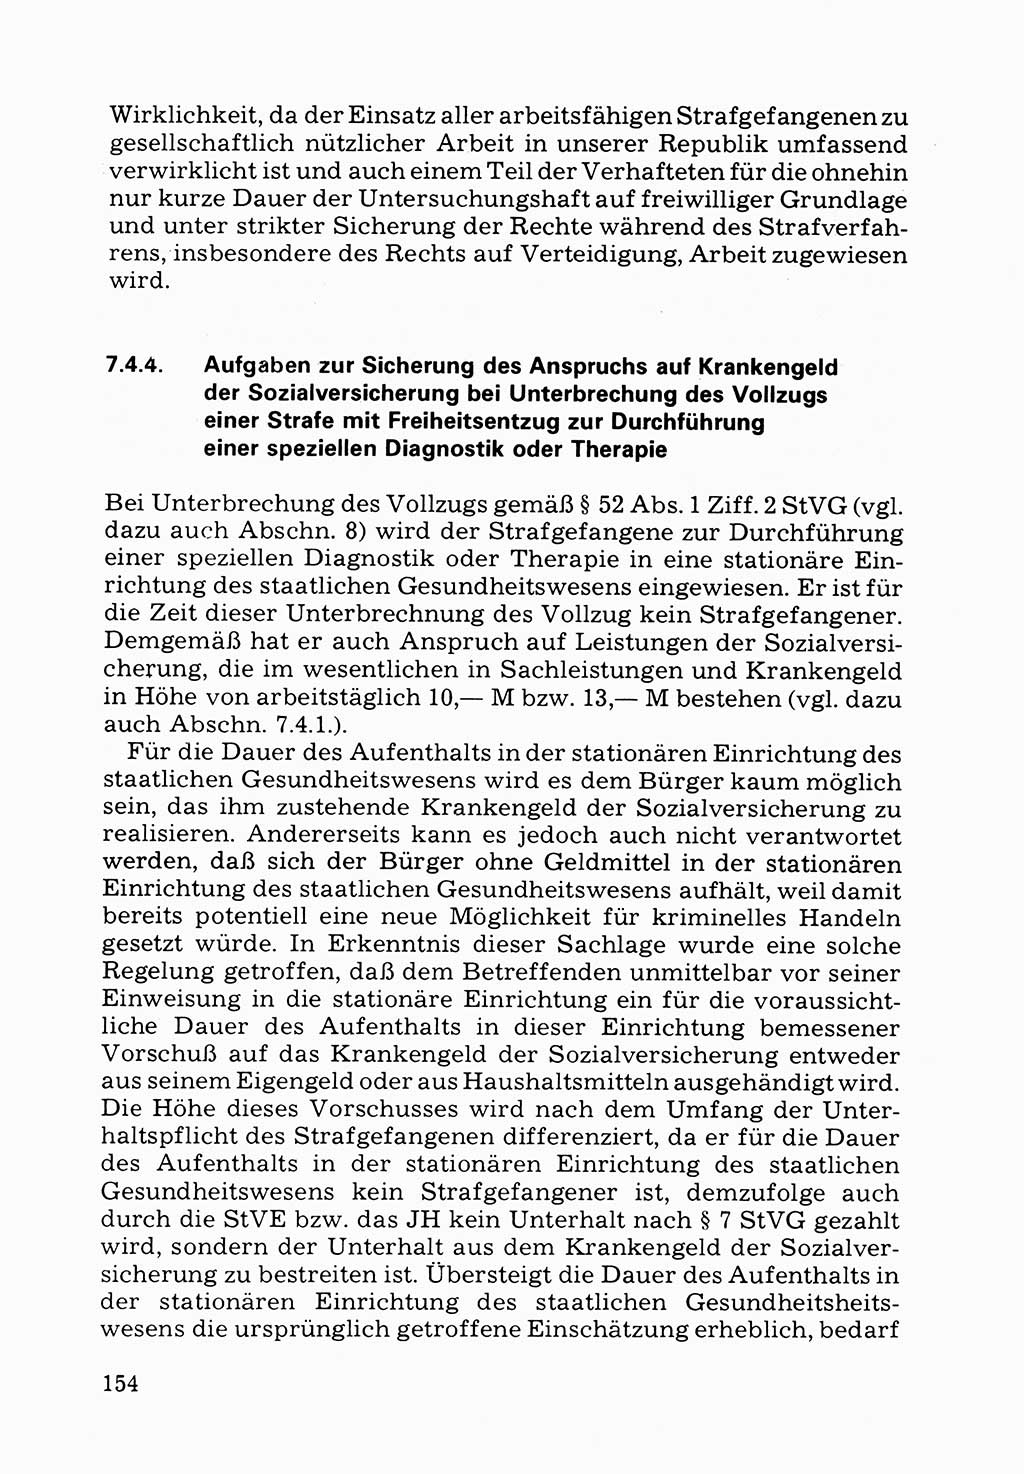 Verwaltungsmäßige Aufgaben beim Vollzug der Untersuchungshaft (U-Haft) sowie der Strafen mit Freiheitsentzug (SV) [Deutsche Demokratische Republik (DDR)] 1980, Seite 154 (Aufg. Vollz. U-Haft SV DDR 1980, S. 154)